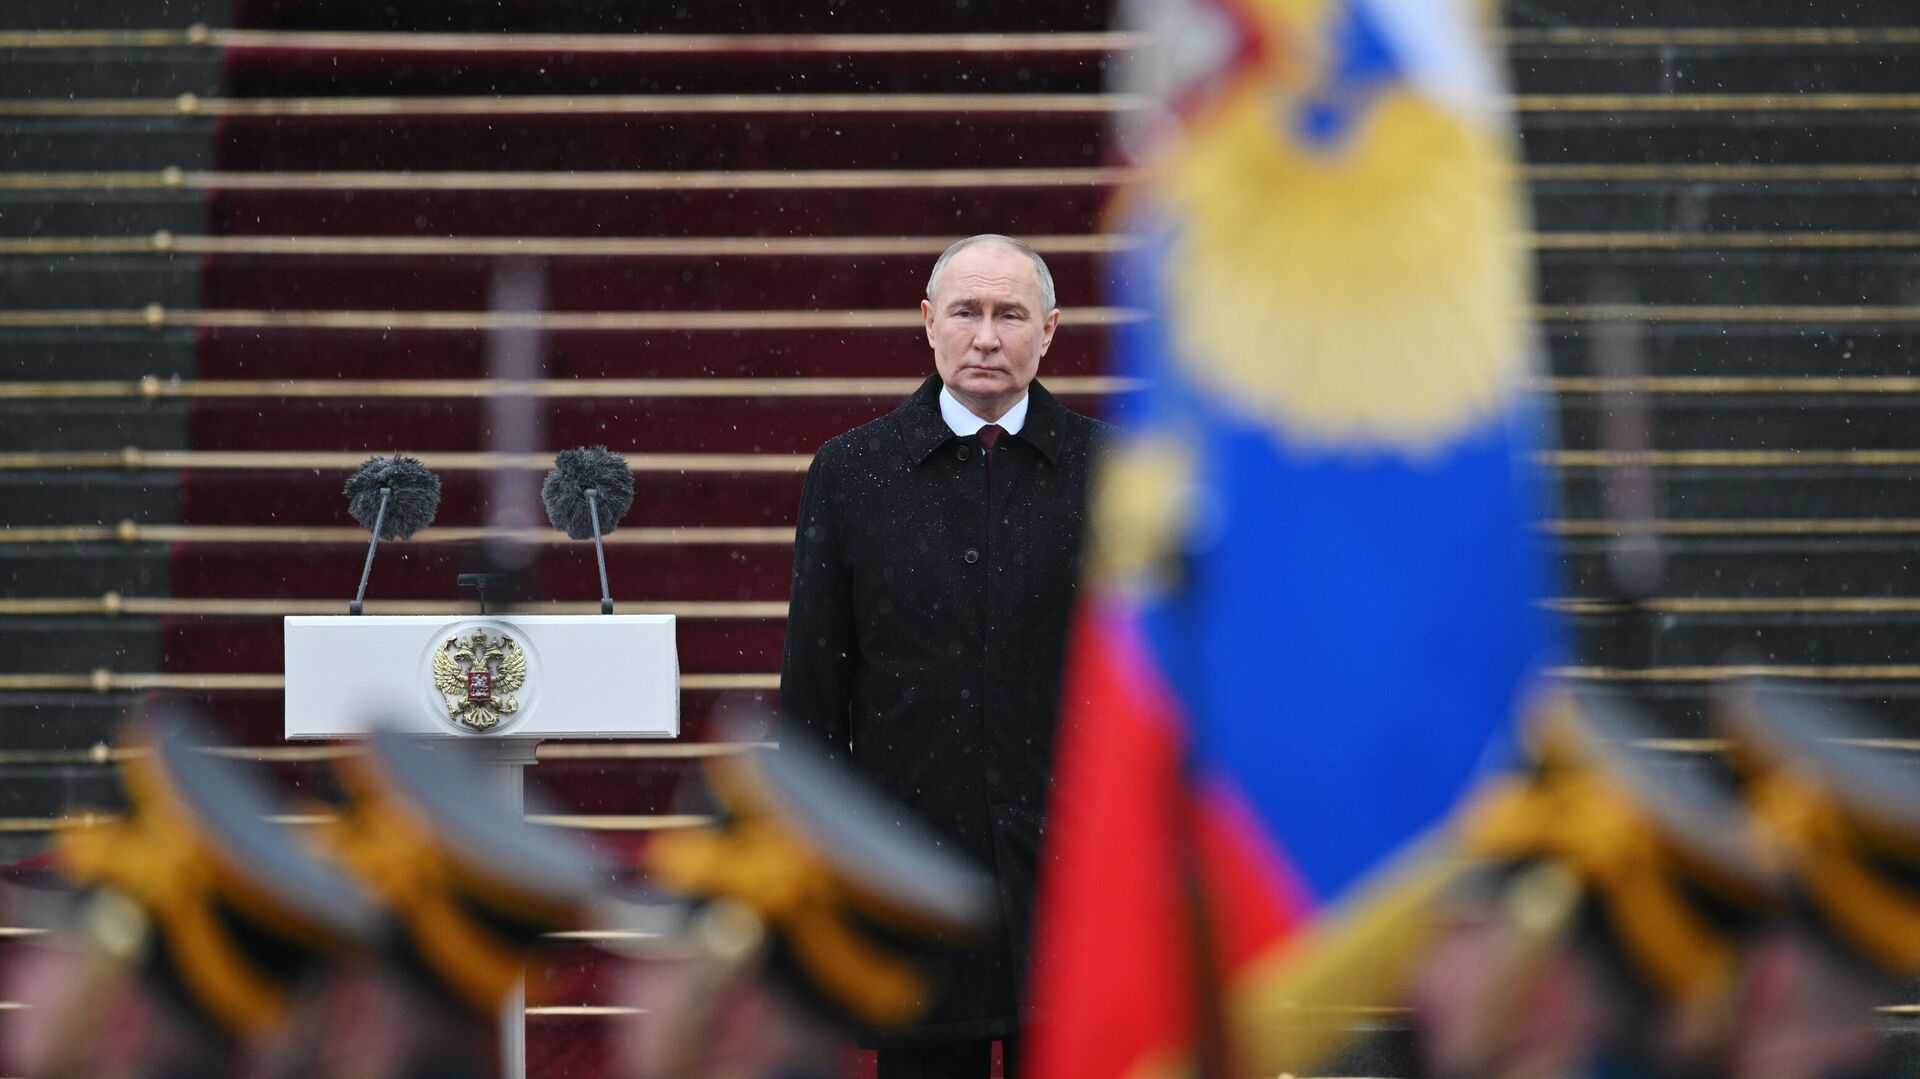 Путин подписал указ об основах госполитики в области исторического просвещения